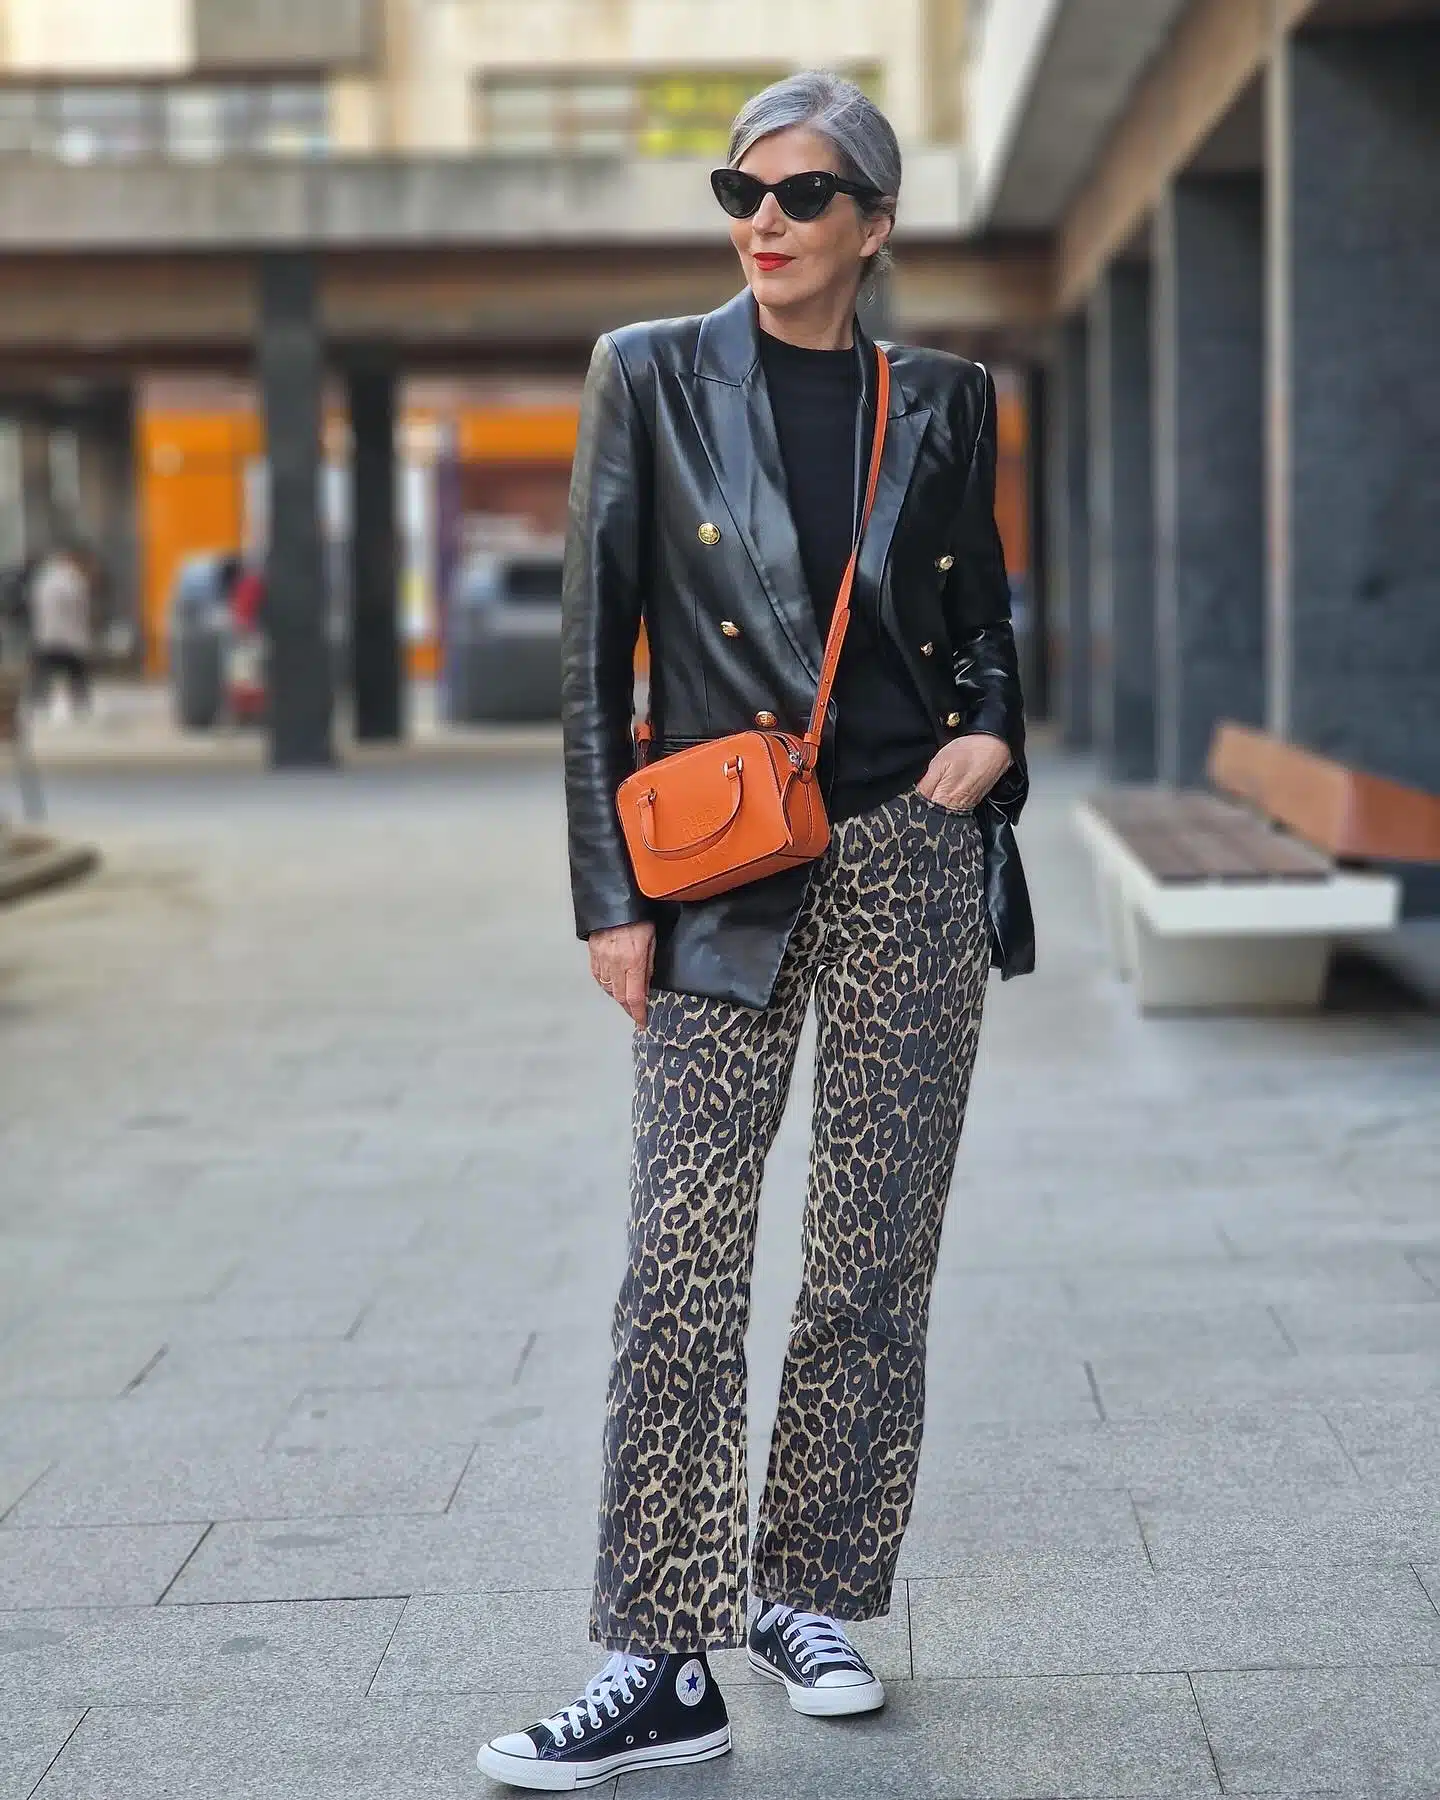 Брюки с леопардовым принтом с кедами черным джемпером и кожаным пиджаком